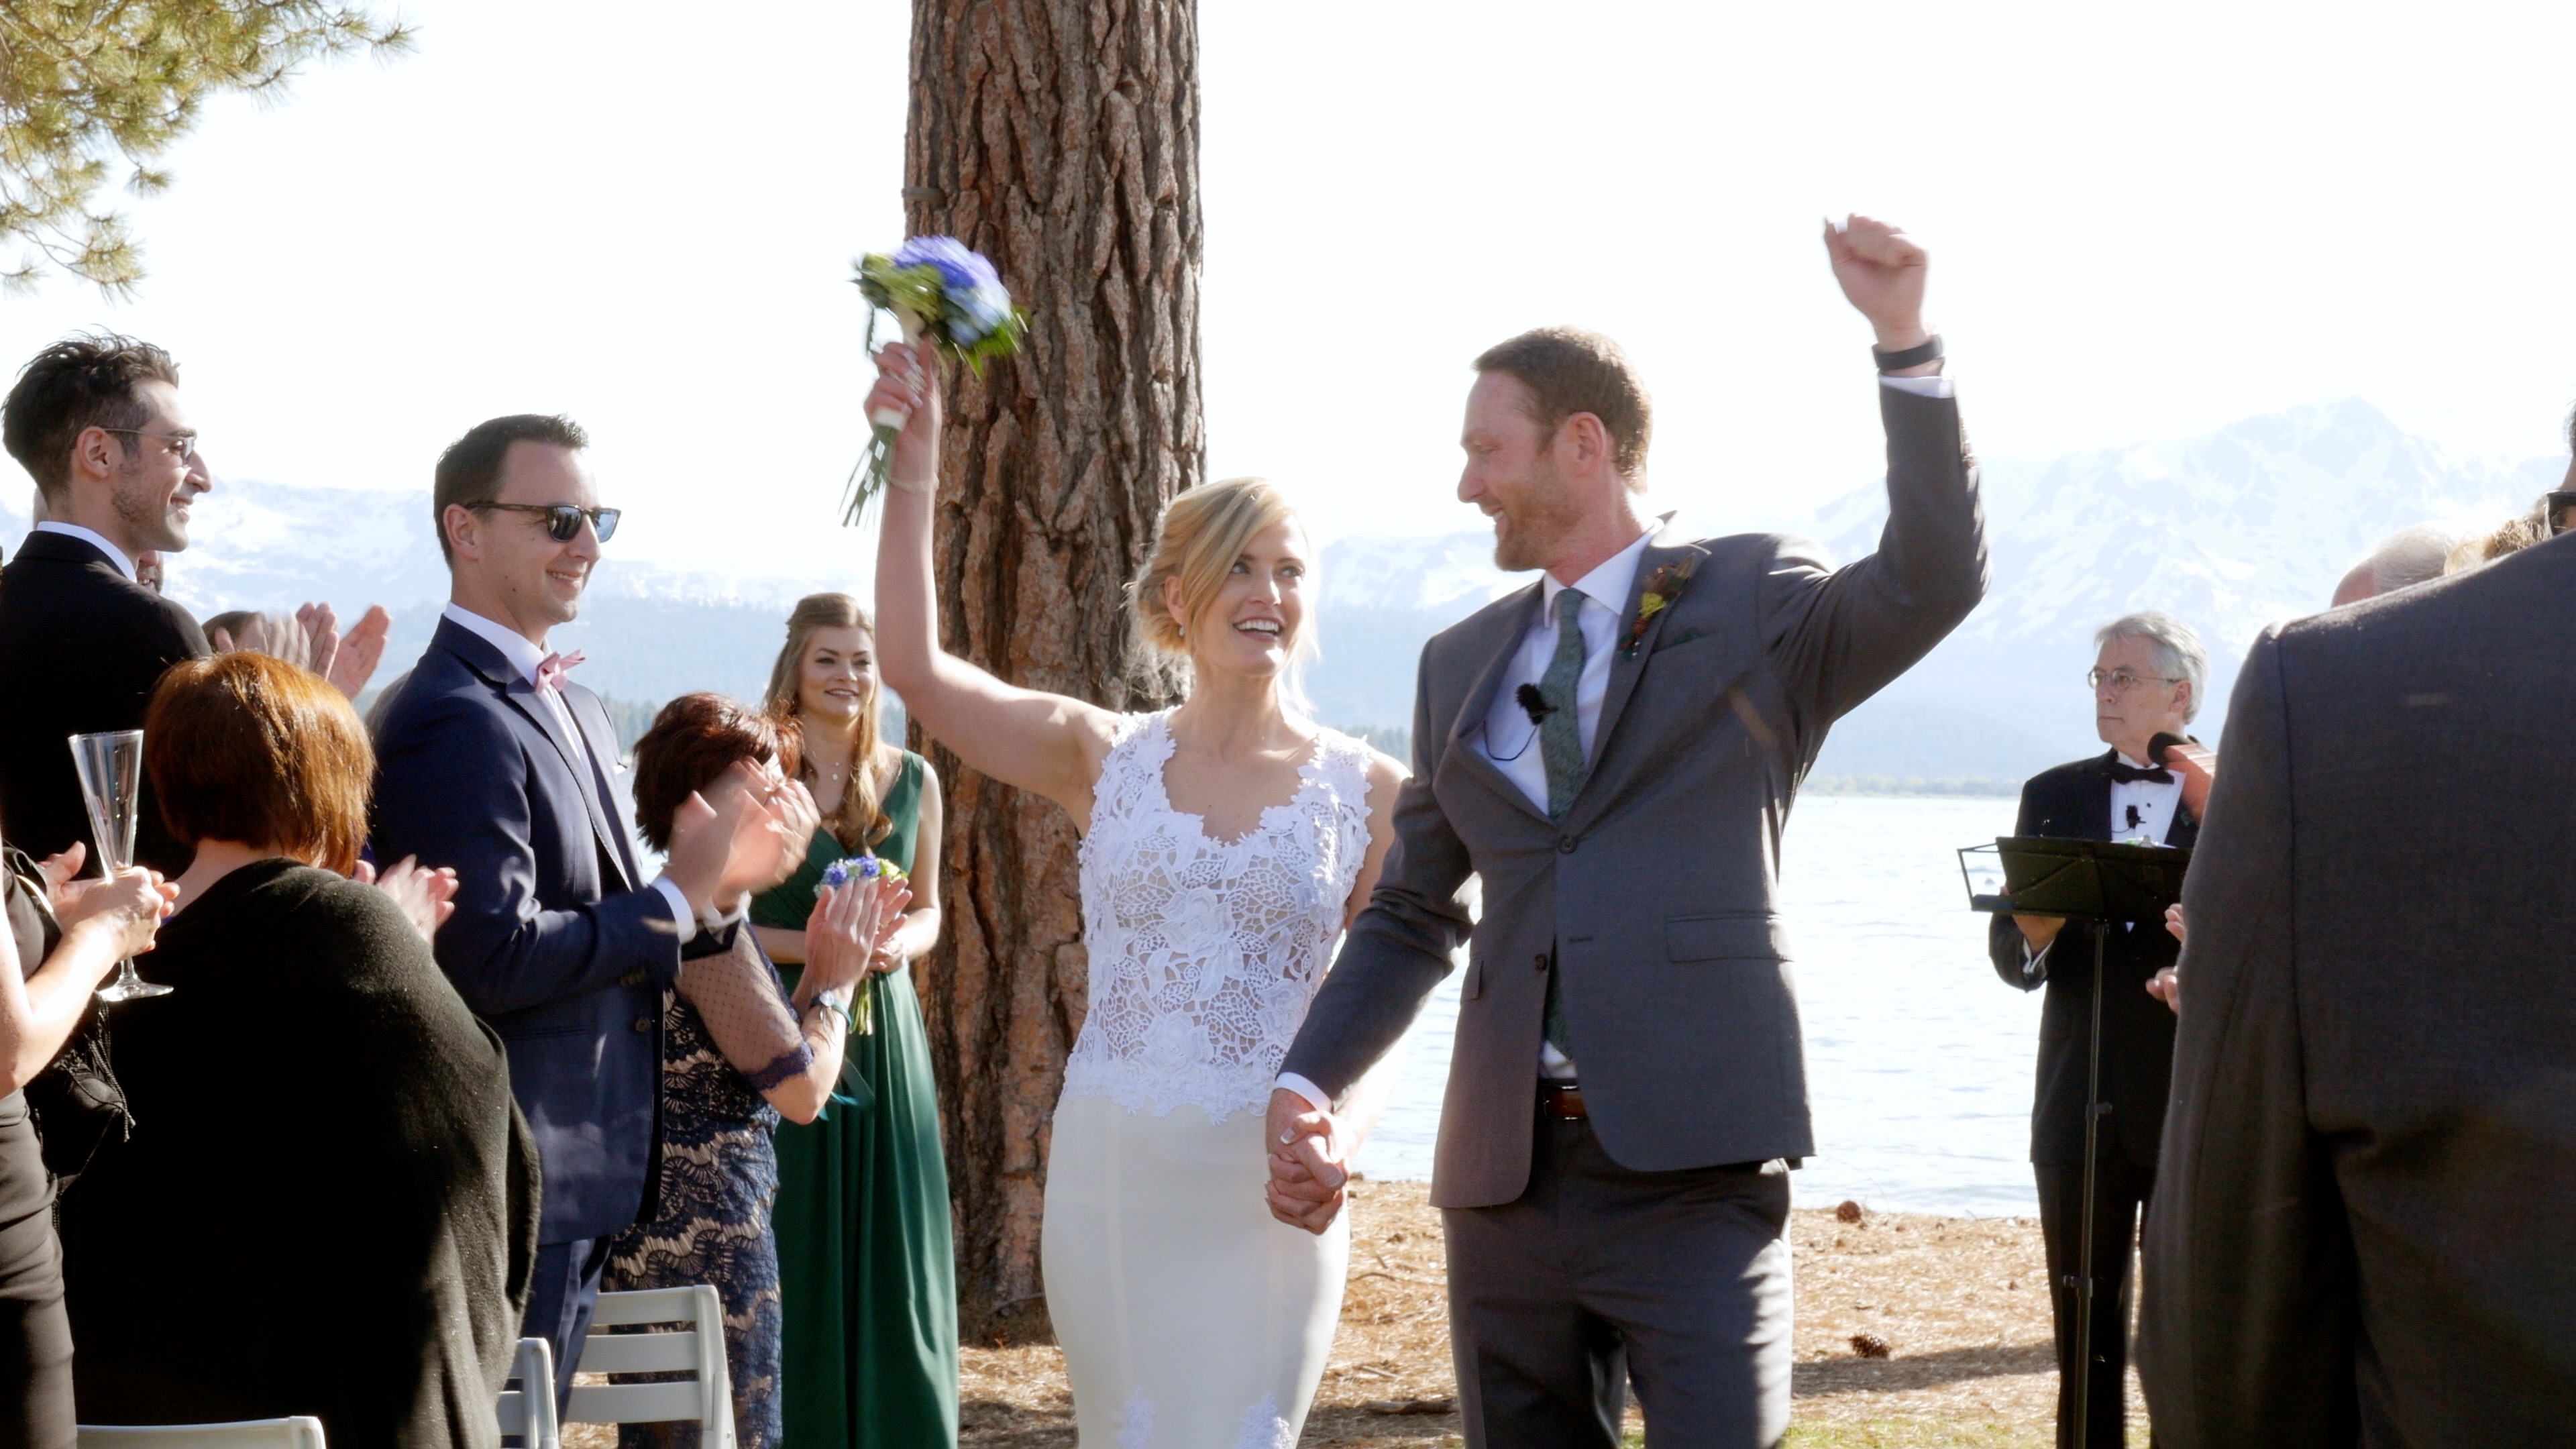 Just married bride and groom at edgewood resort lake tahoe